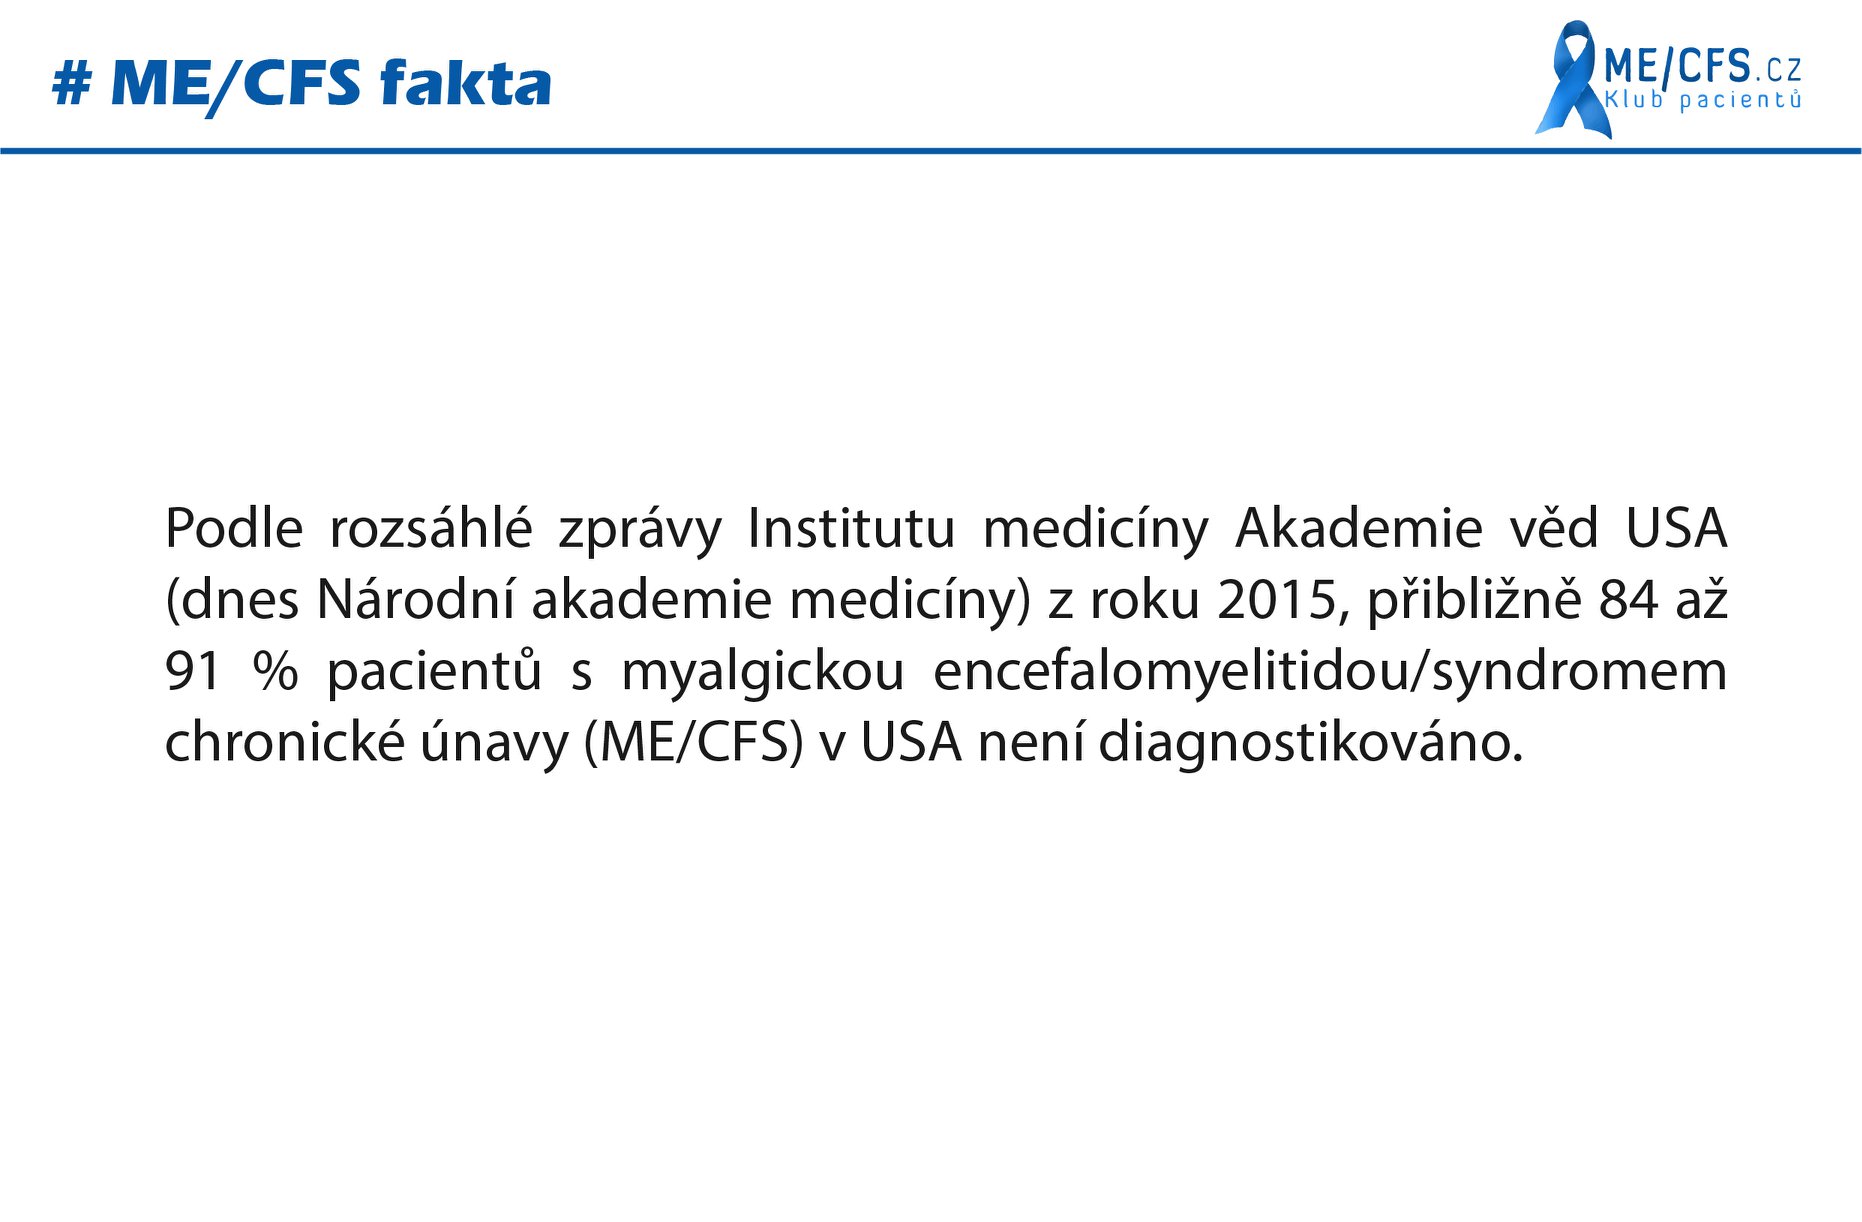 #MECFS_fakta 17 - poddiagnostikované onemocnění